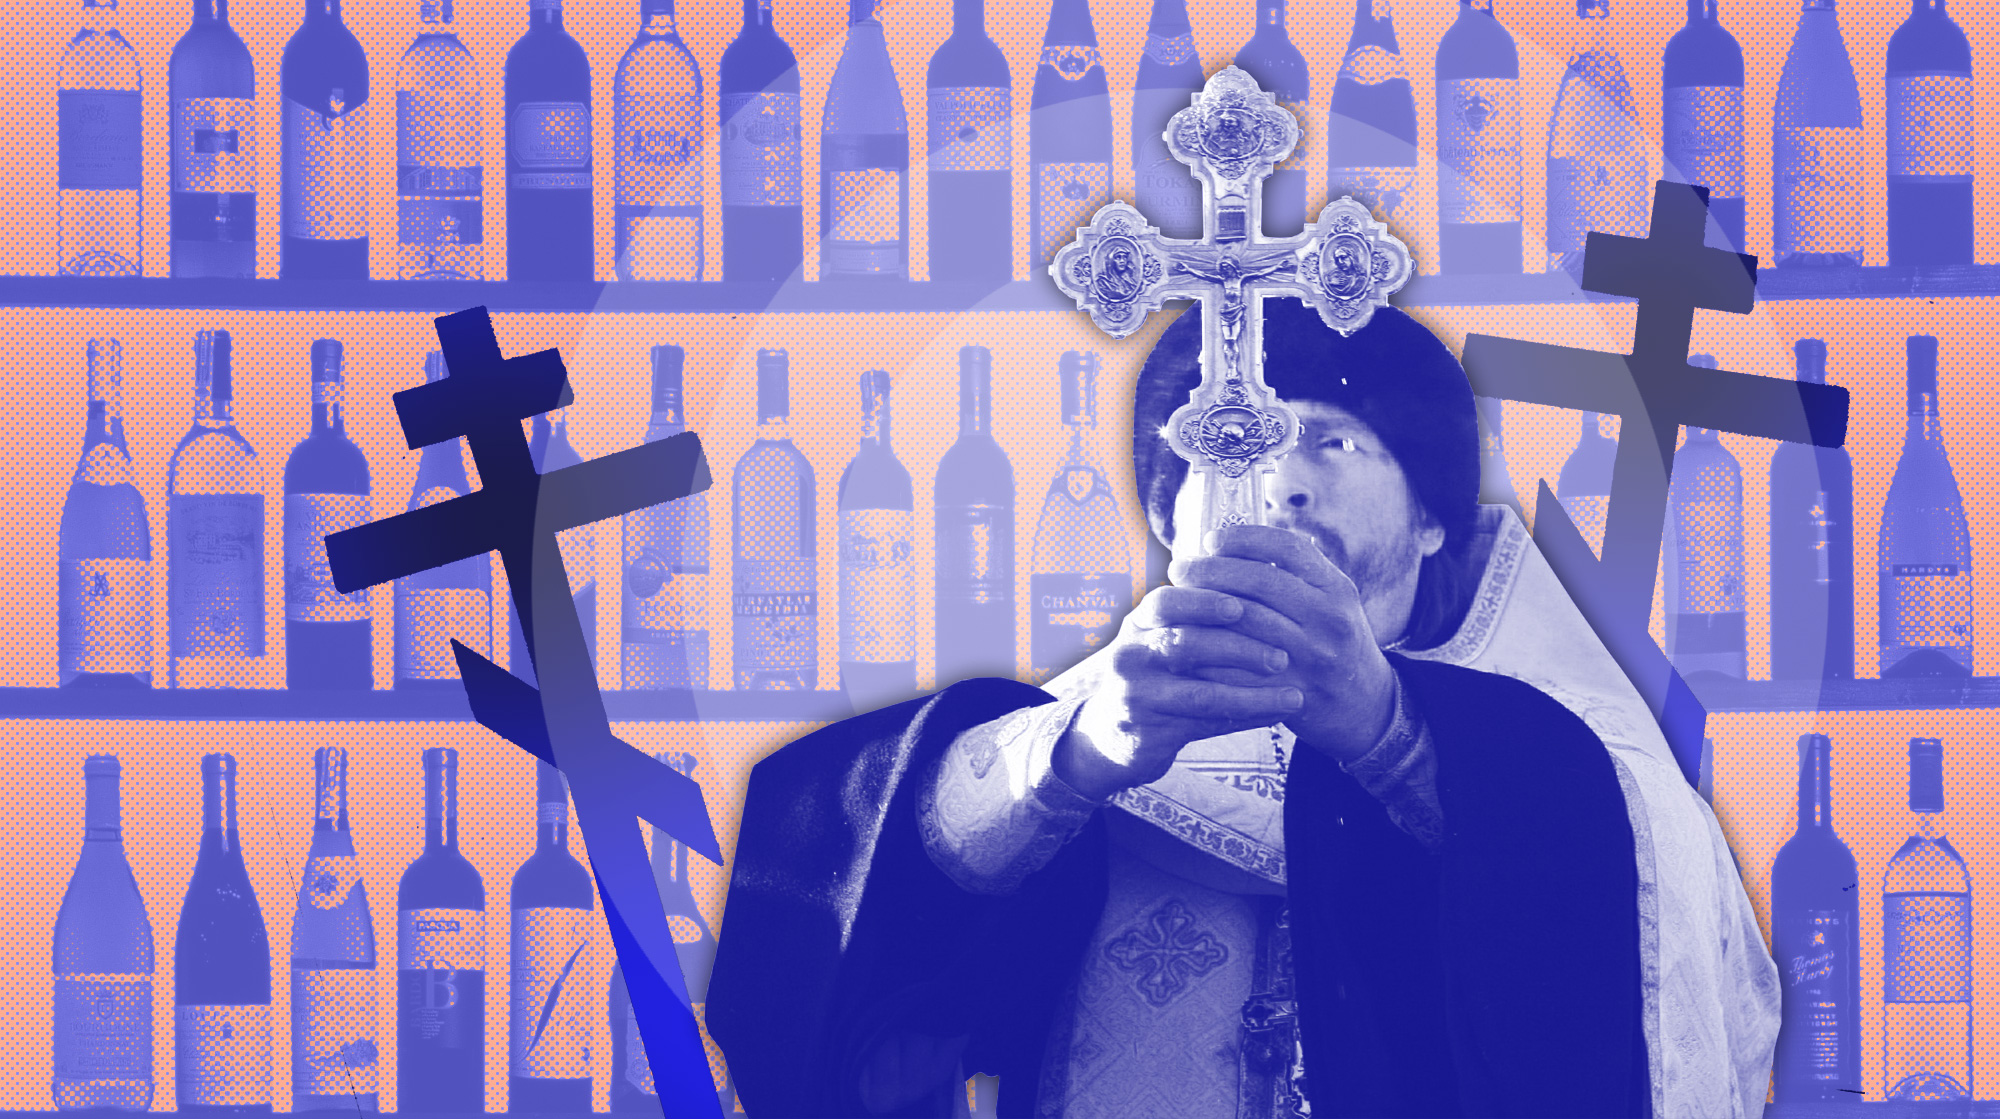 Борис Гребенщиков, Вика Цыганова и другие — о том, почему имеют право воспевать водку и пьянство undefined